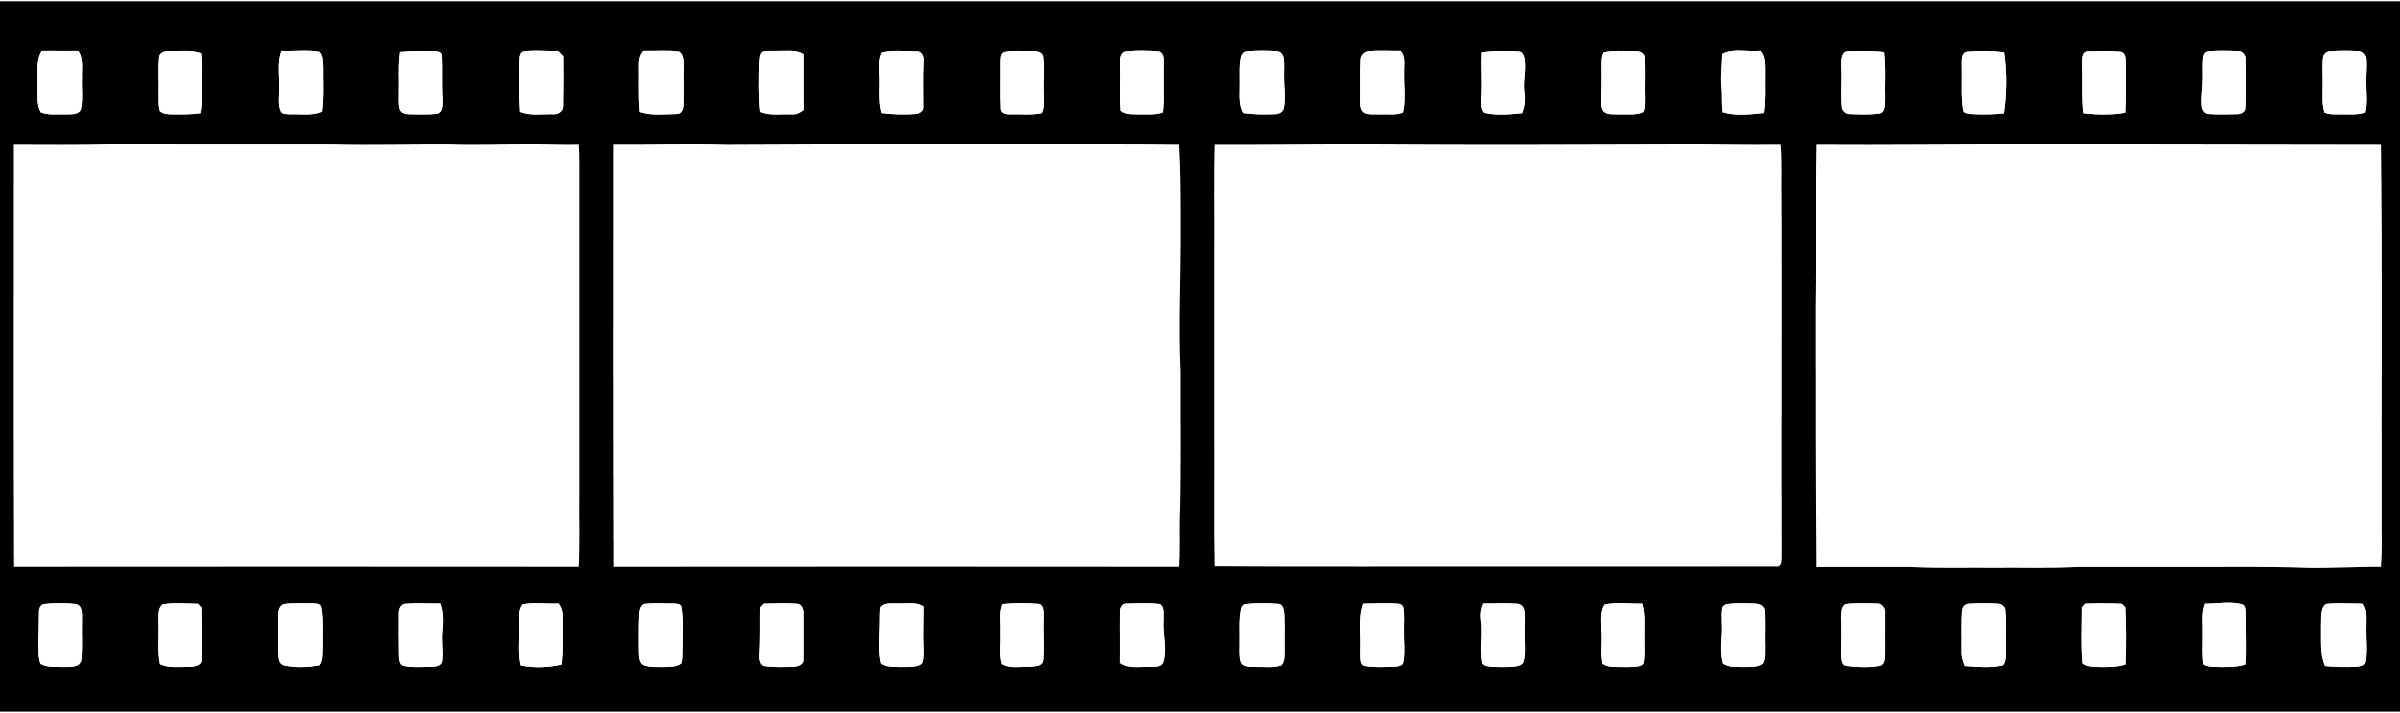 Movie reel film clip art image